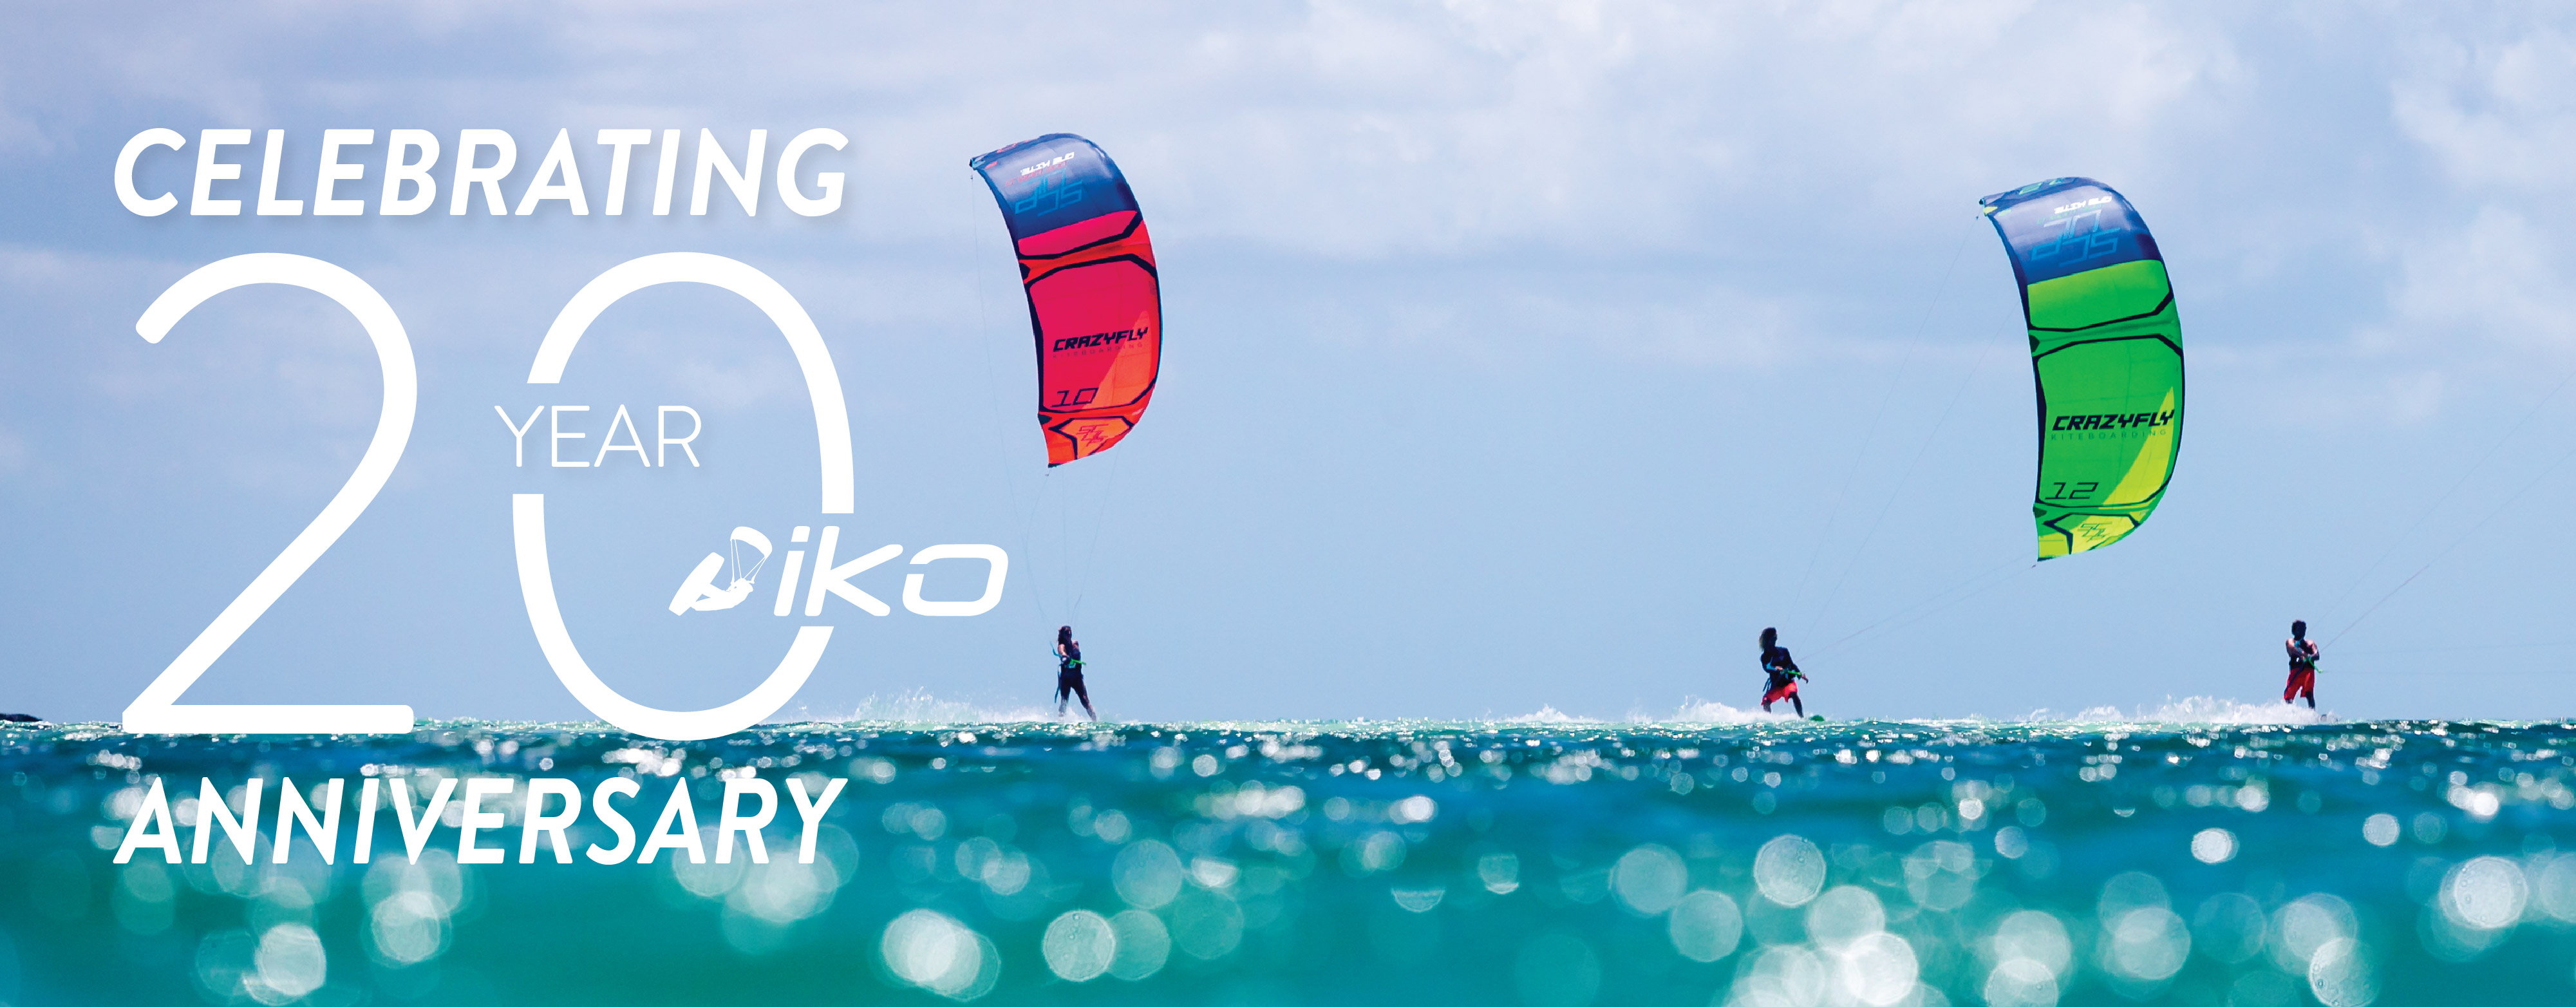 IKO 20th Anniversary Kitesurfing